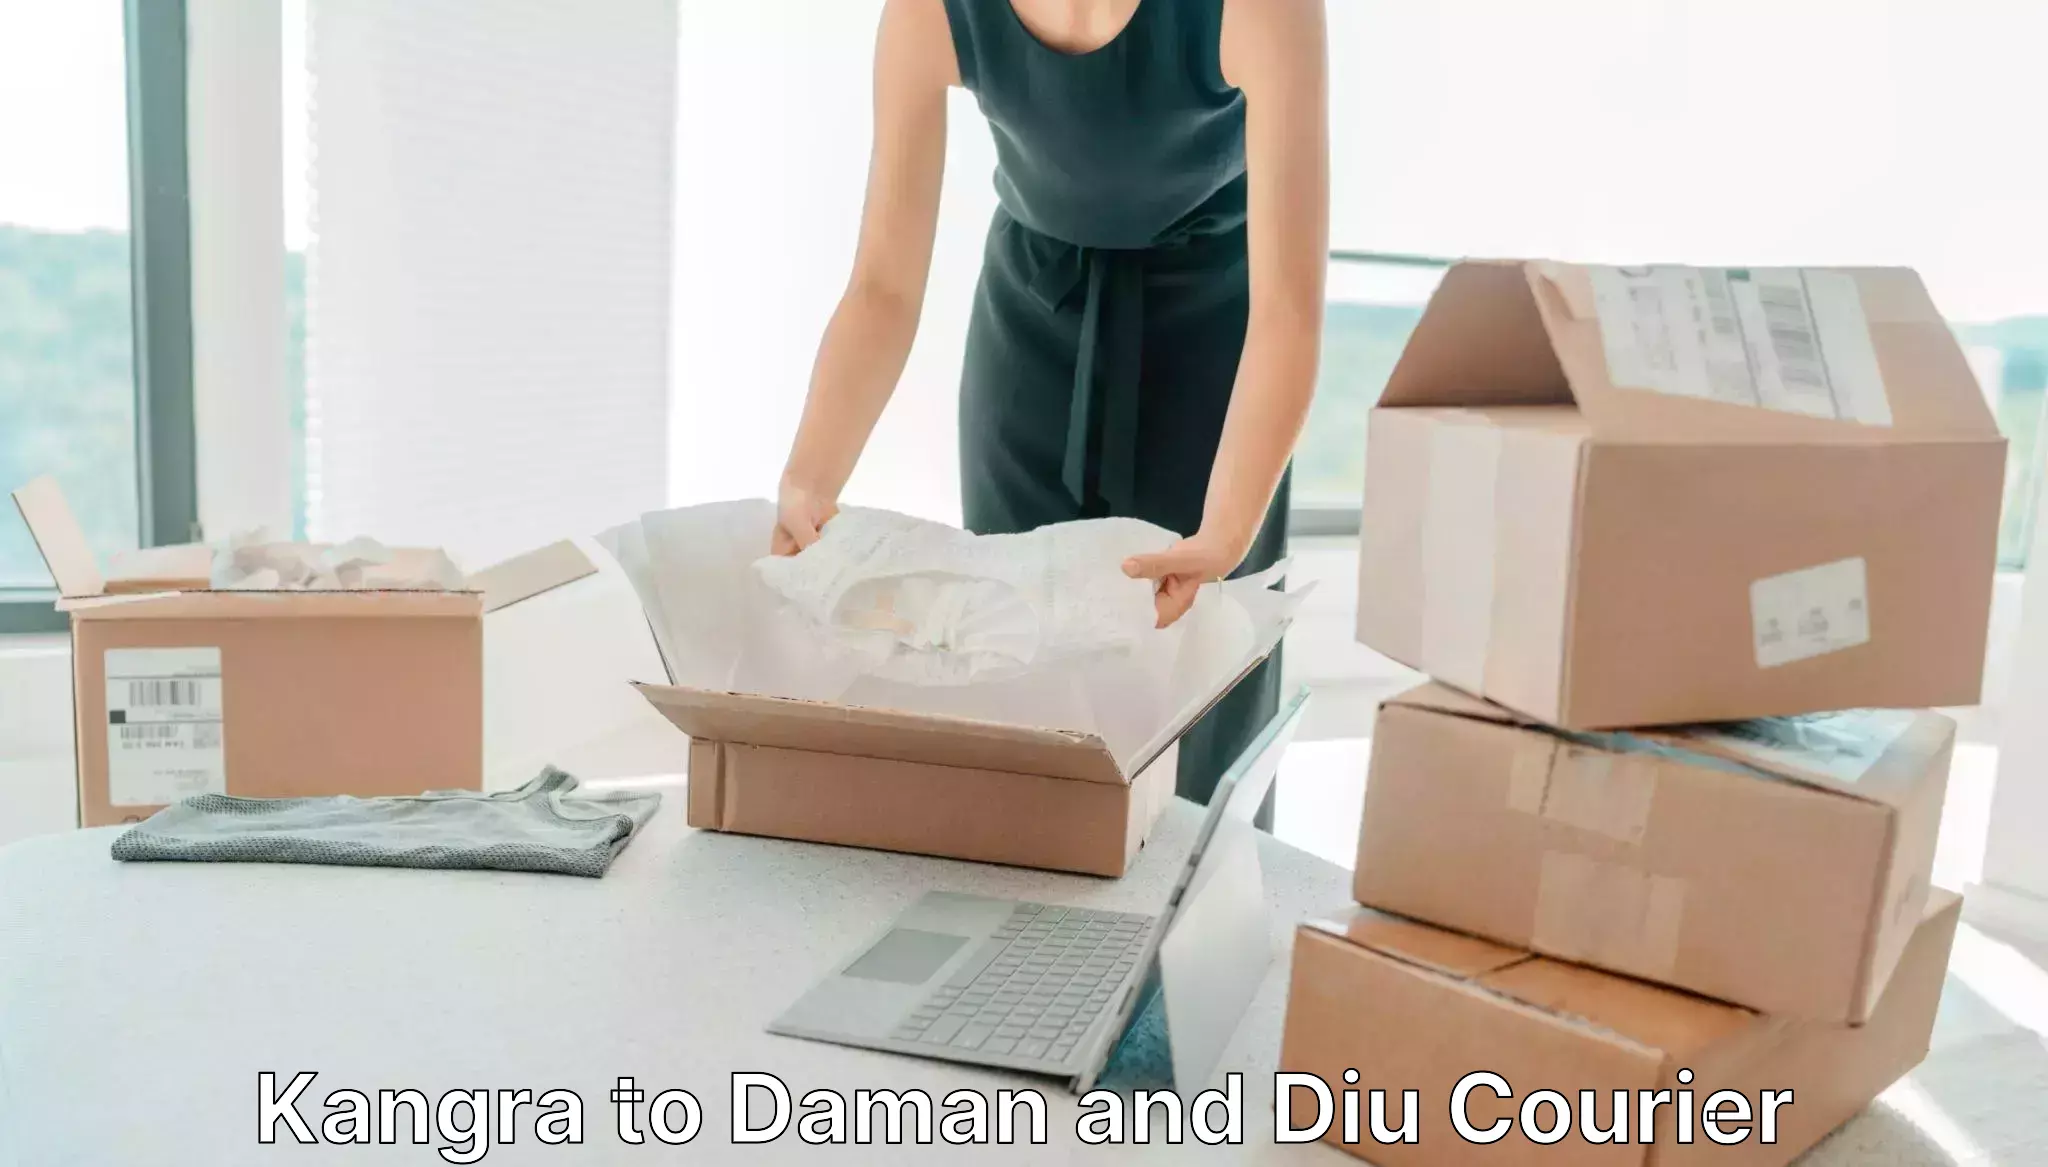 Global delivery options Kangra to Daman